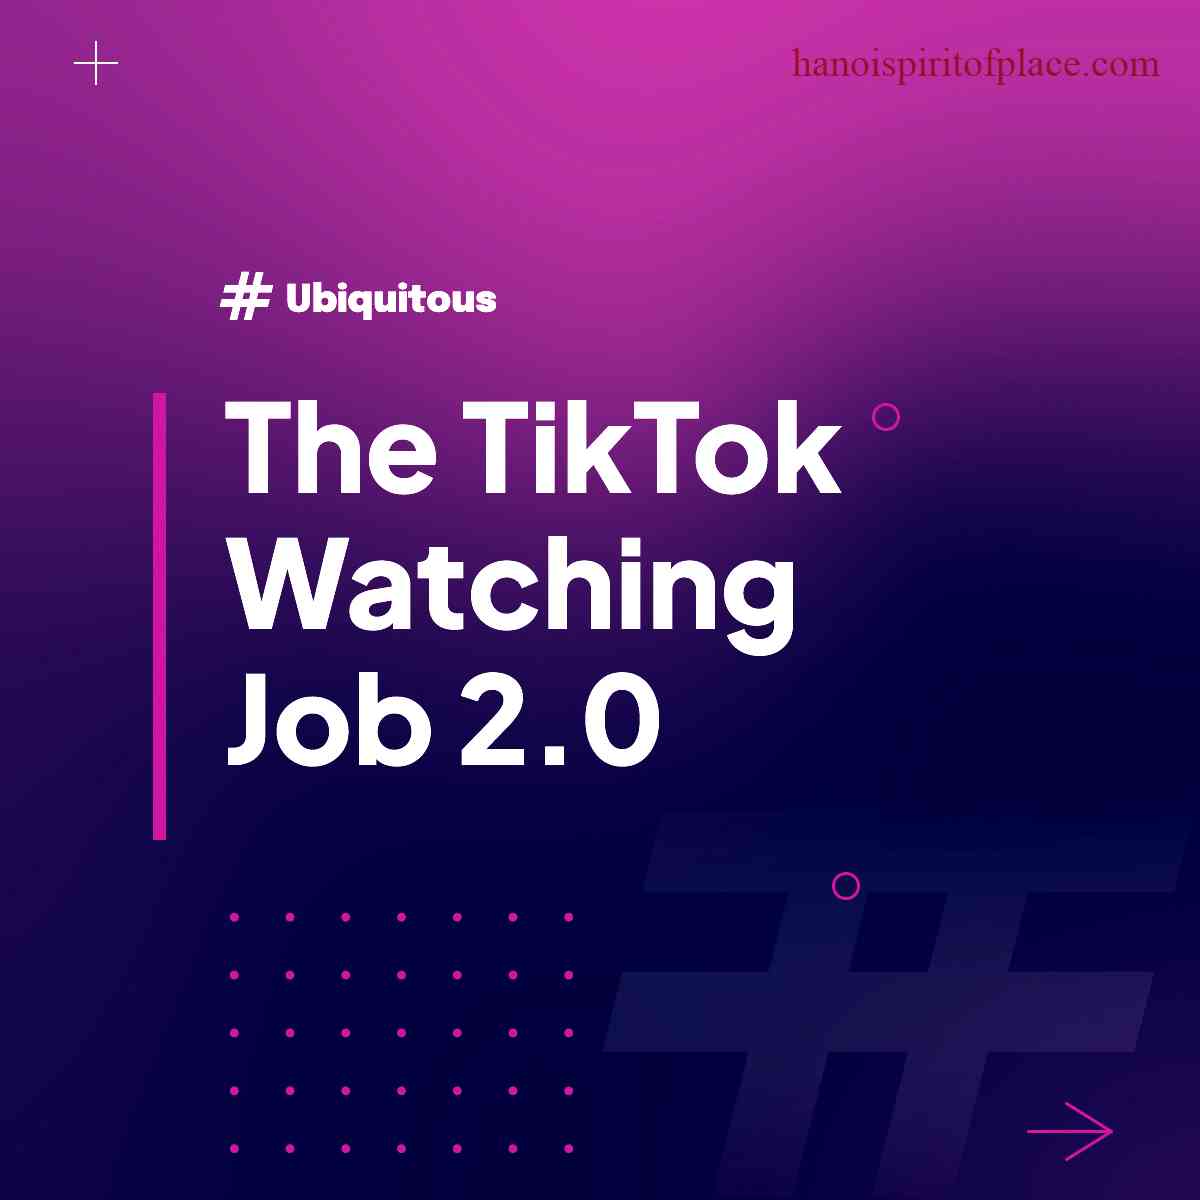 Advantages of the TikTok watching job